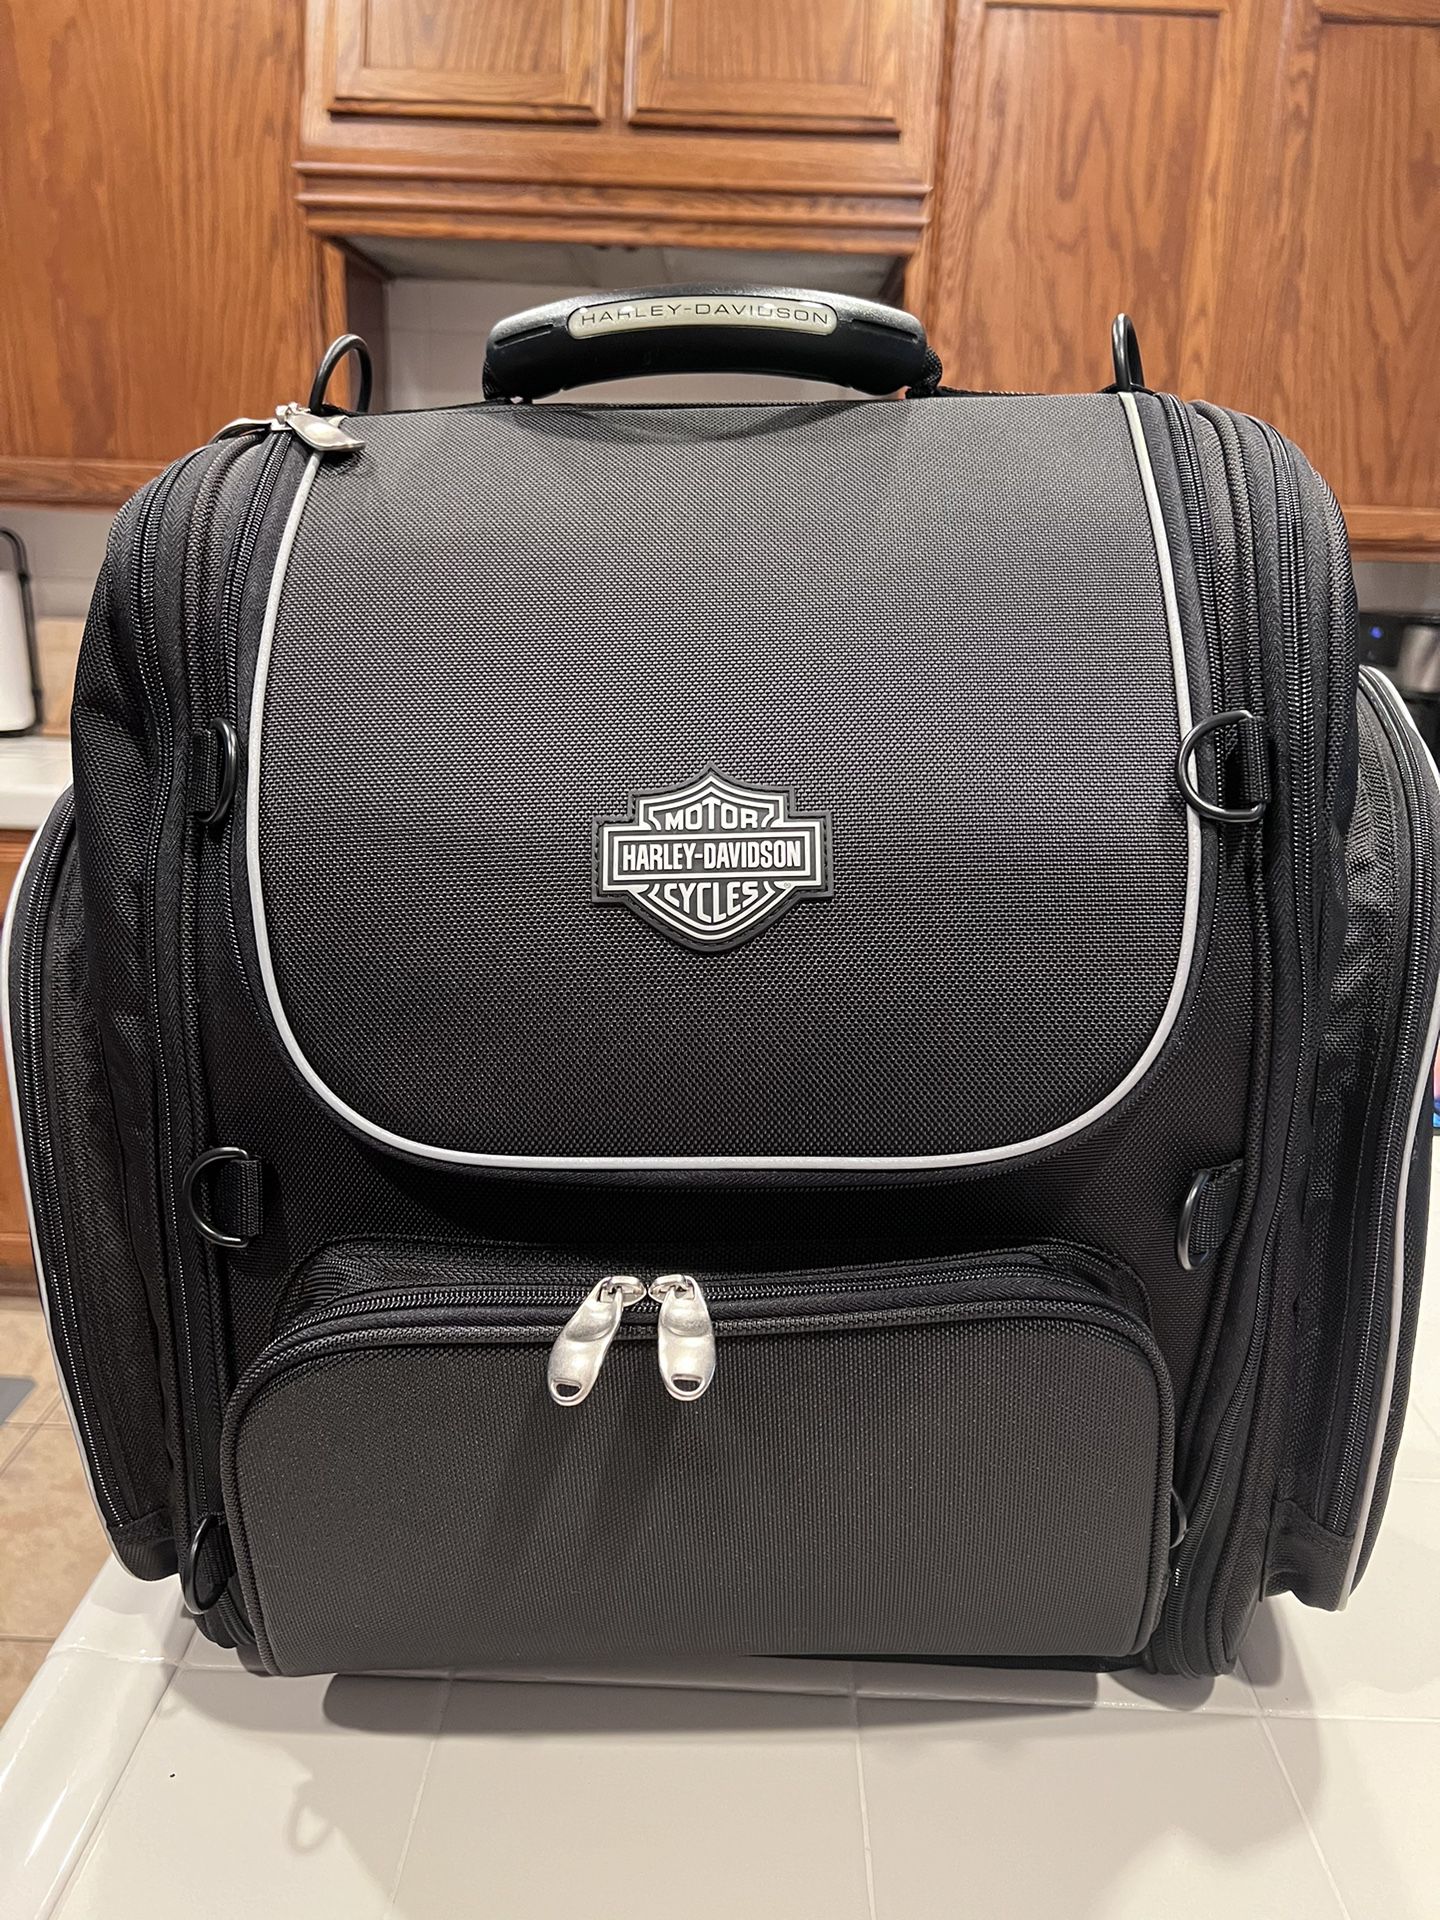 Harley Davidson Premium Touring Luggage Bag